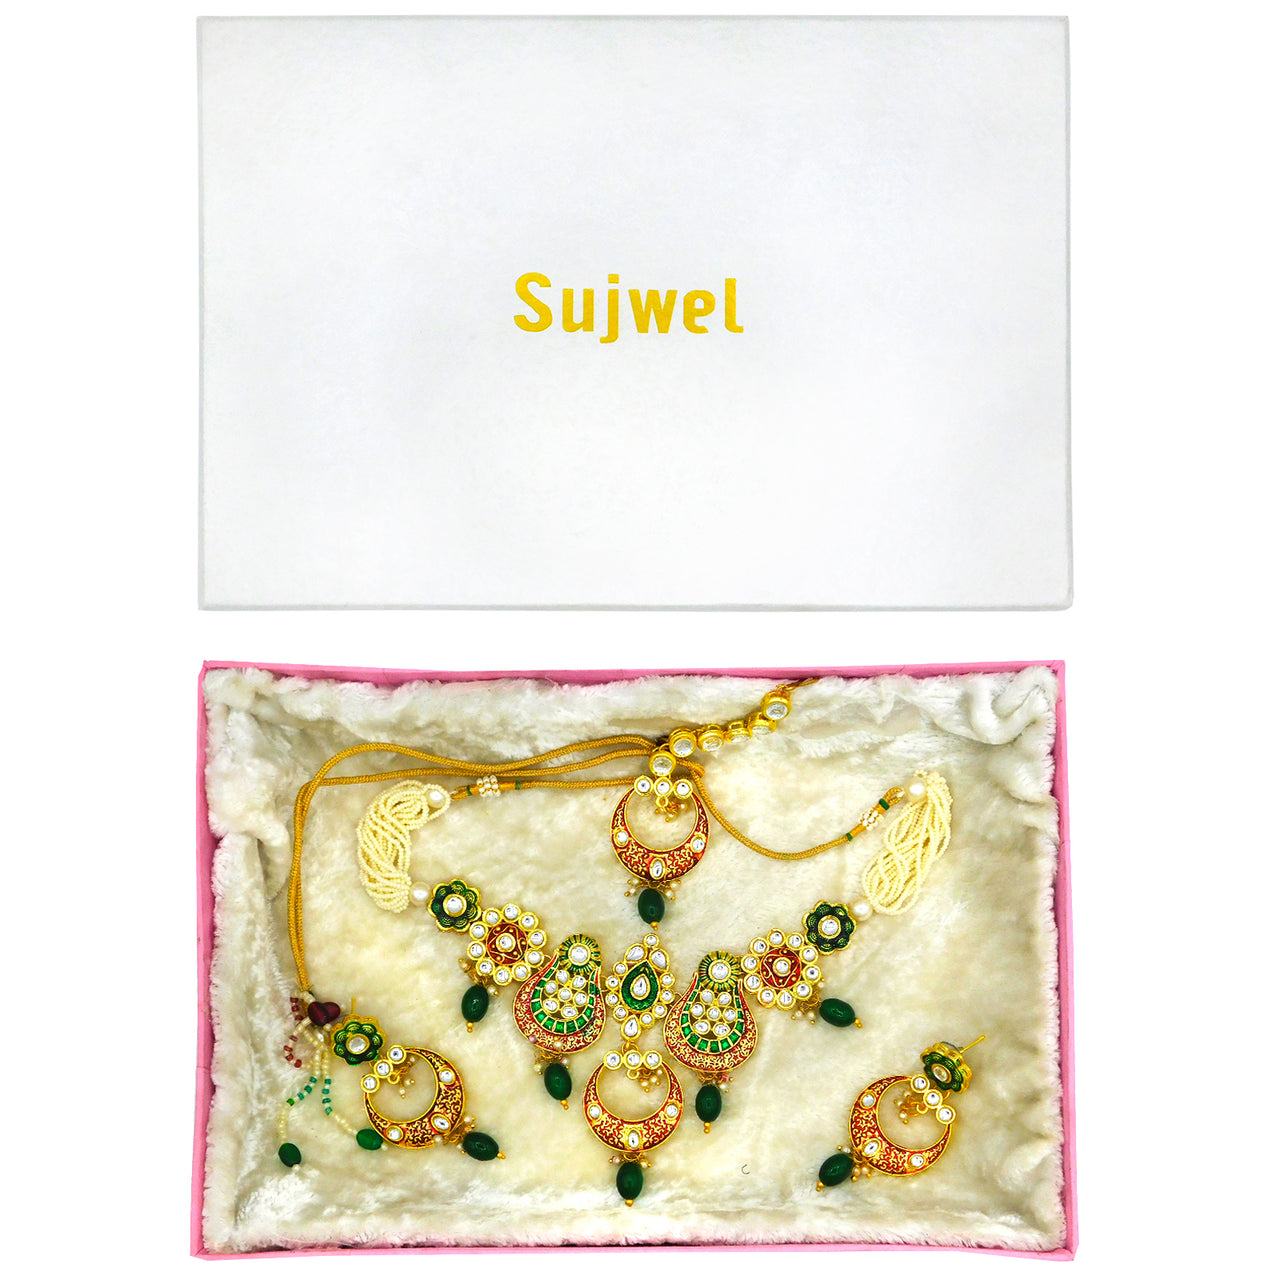 Sujwel Gold Plated Meenakari Choker Necklace Set (08-0230) - Sujwel